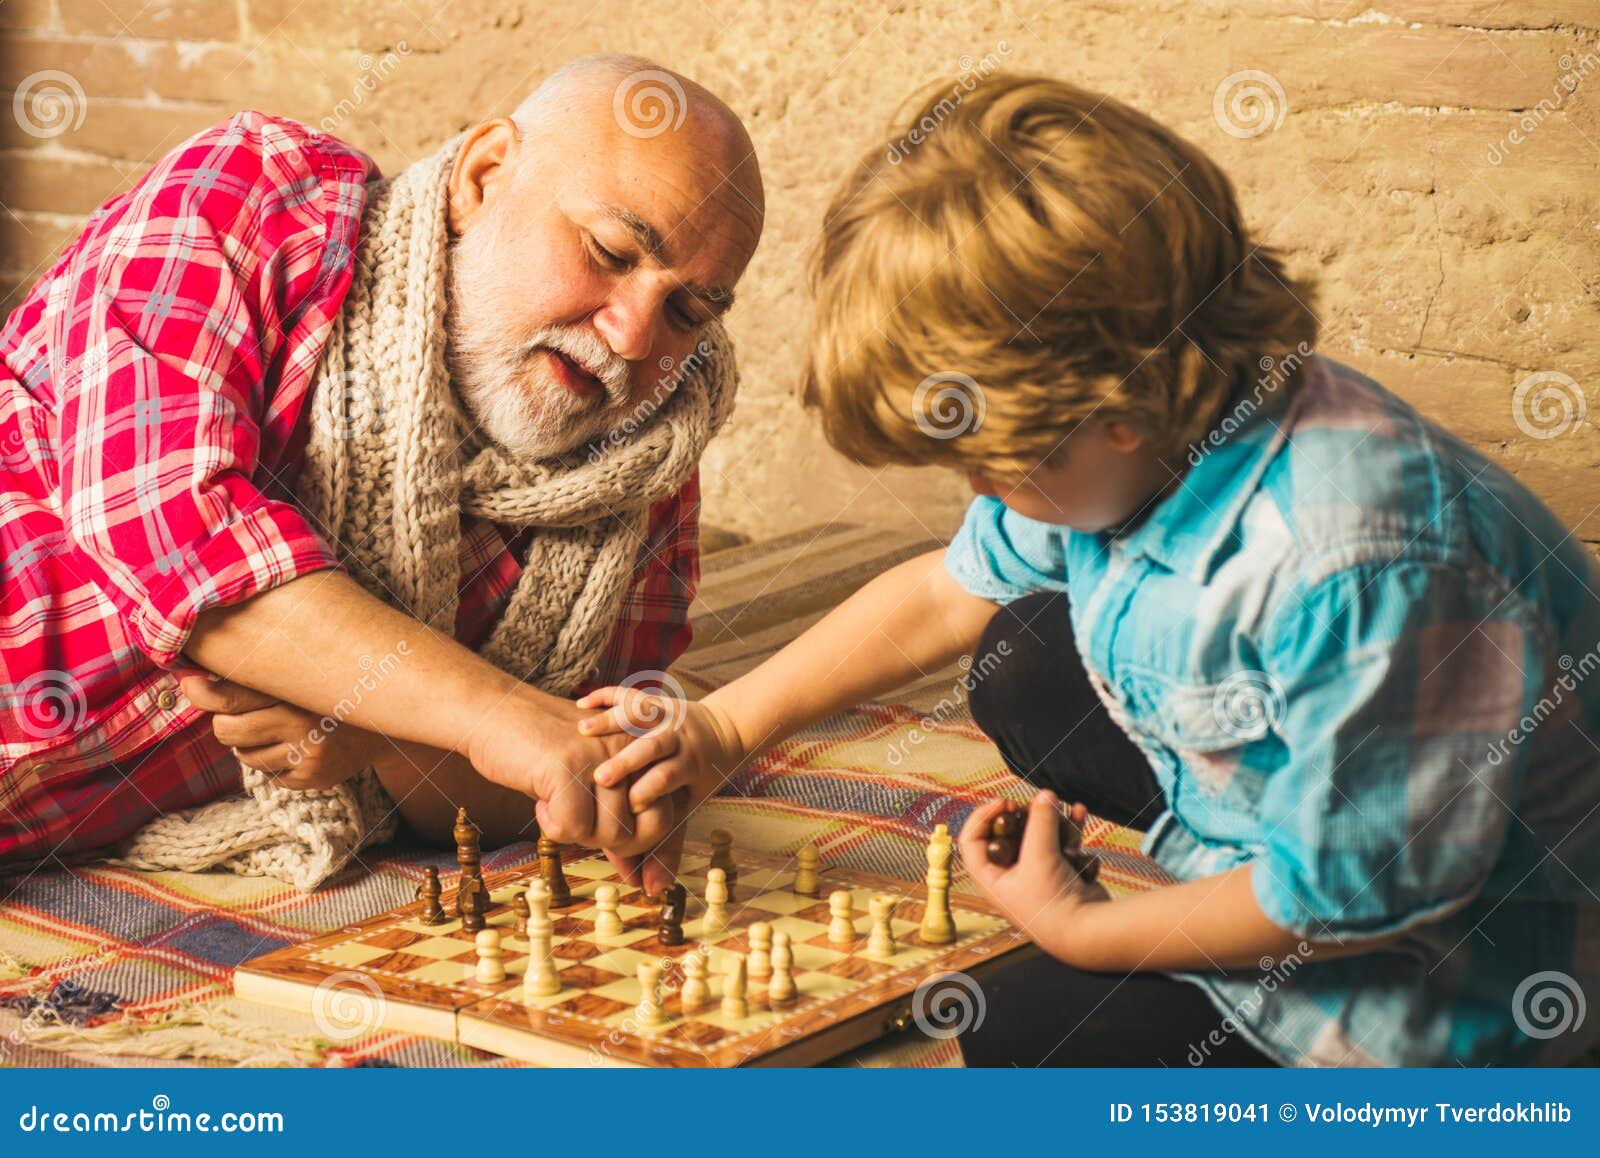 Дед с внуком играют в шашки. Игра в шахматы с дедушкой. Дедушка и внук играют в шахматы. Дед внук шахматы. Дедушка играет с внуком.